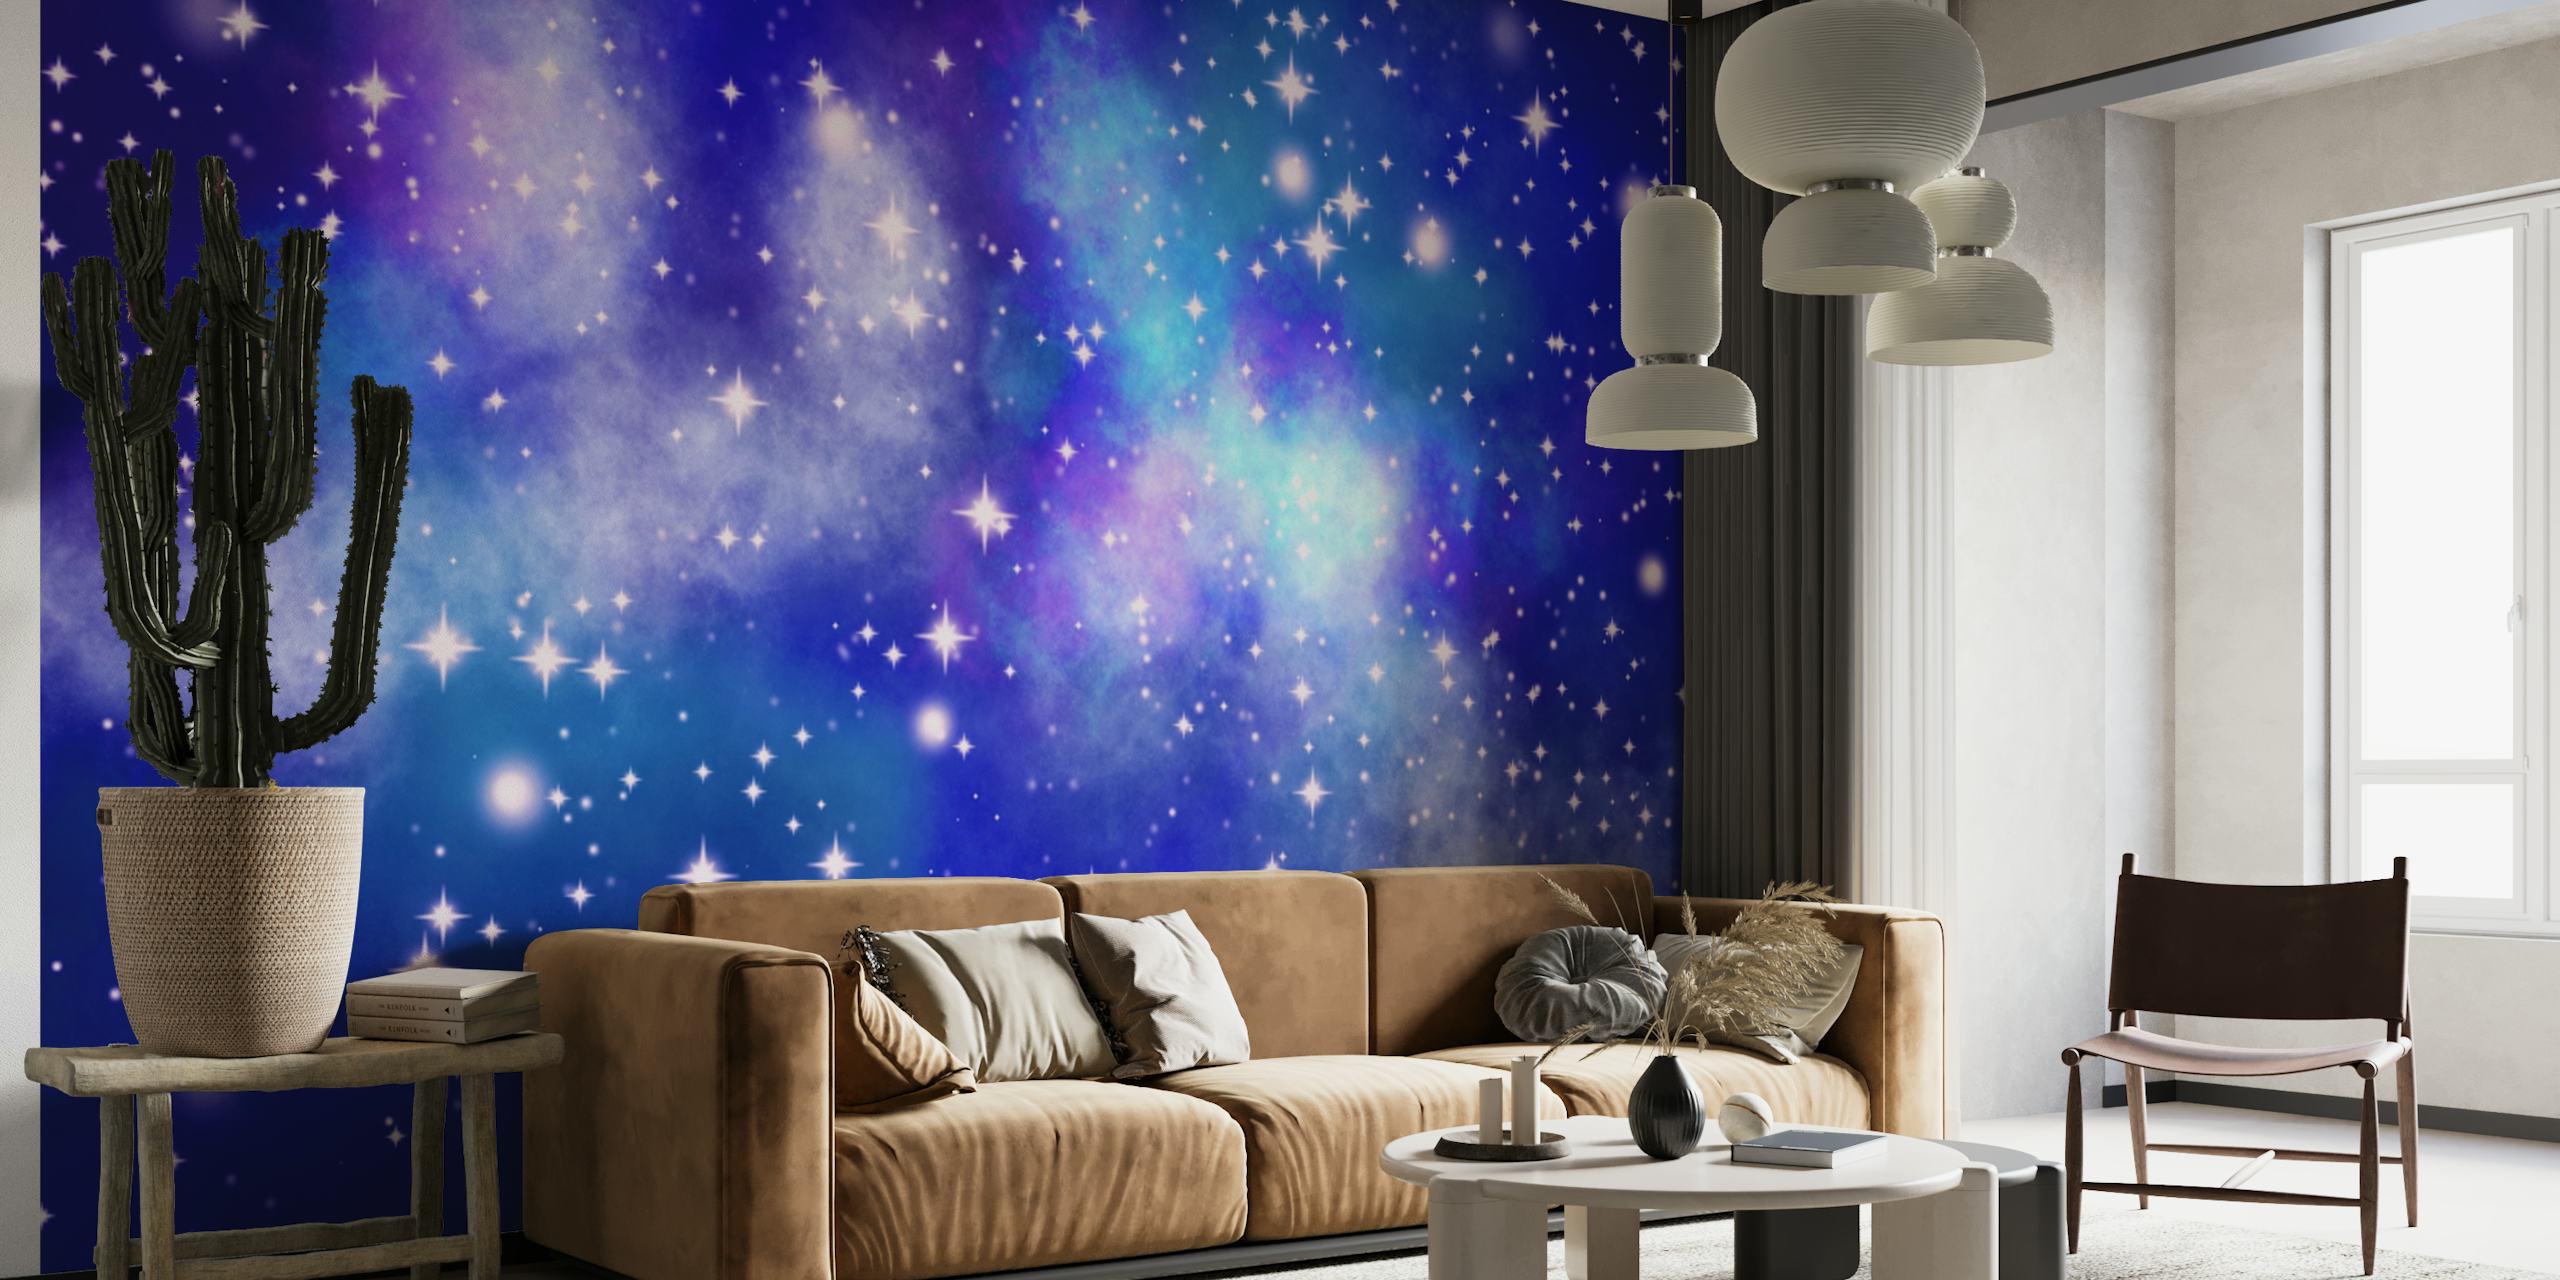 Tähtikirkas yötaivas, jossa on sinisen eri sävyjä ja tuikkivia tähtiä, jotka edustavat galaksinäkymän seinämaalausta